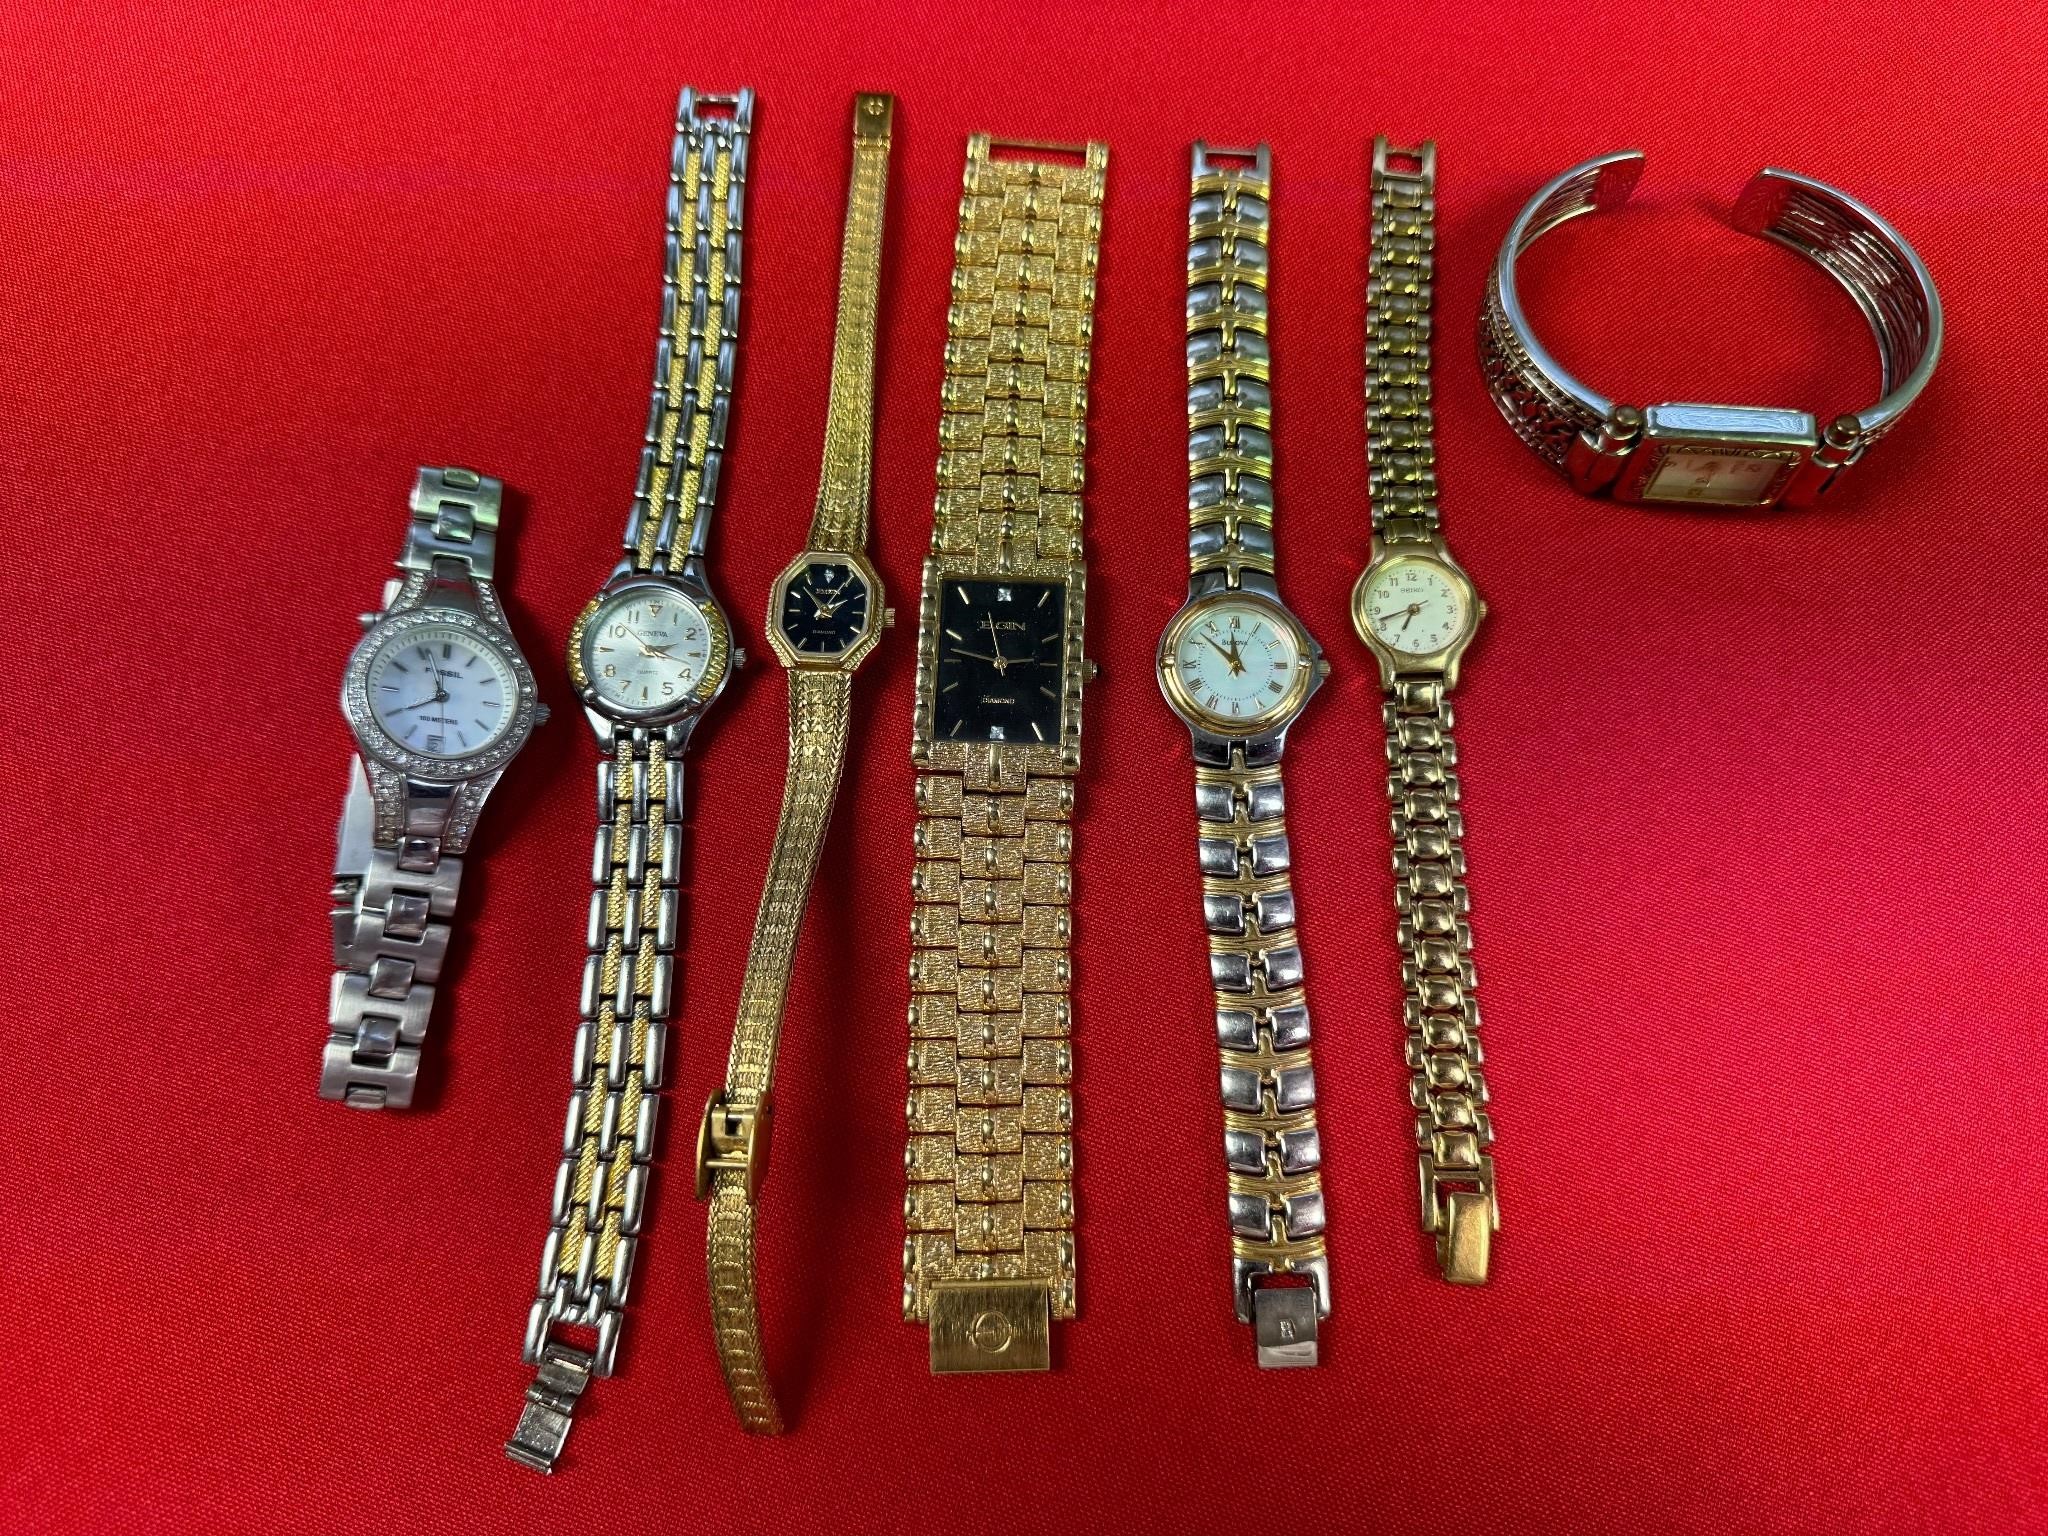 7 Vintage Men's & Women's Wrist Watches